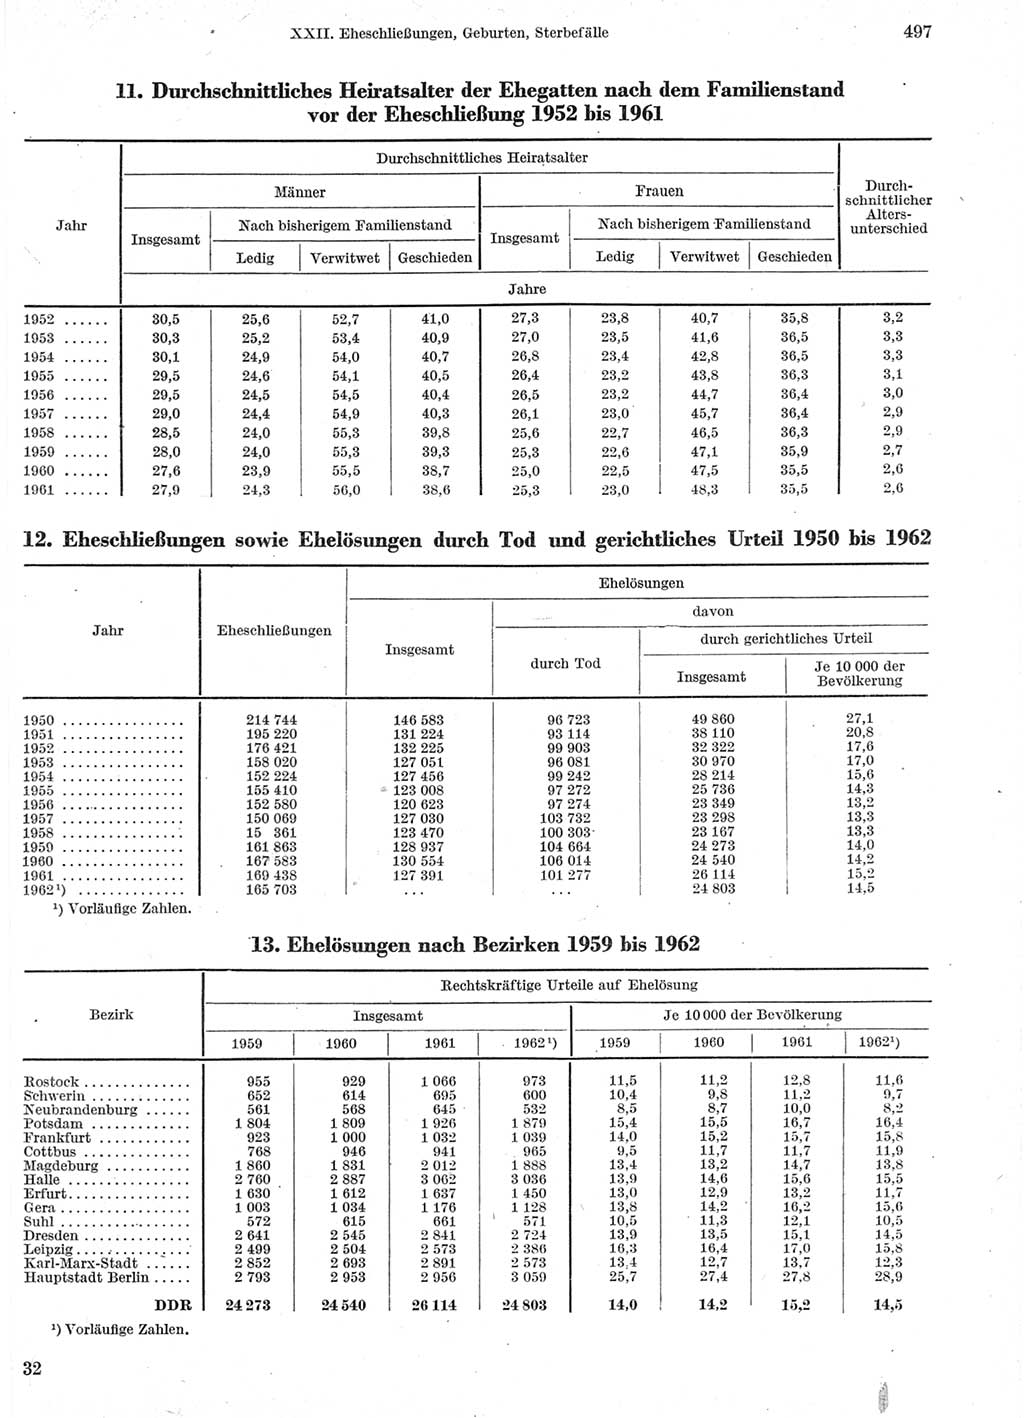 Statistisches Jahrbuch der Deutschen Demokratischen Republik (DDR) 1963, Seite 497 (Stat. Jb. DDR 1963, S. 497)